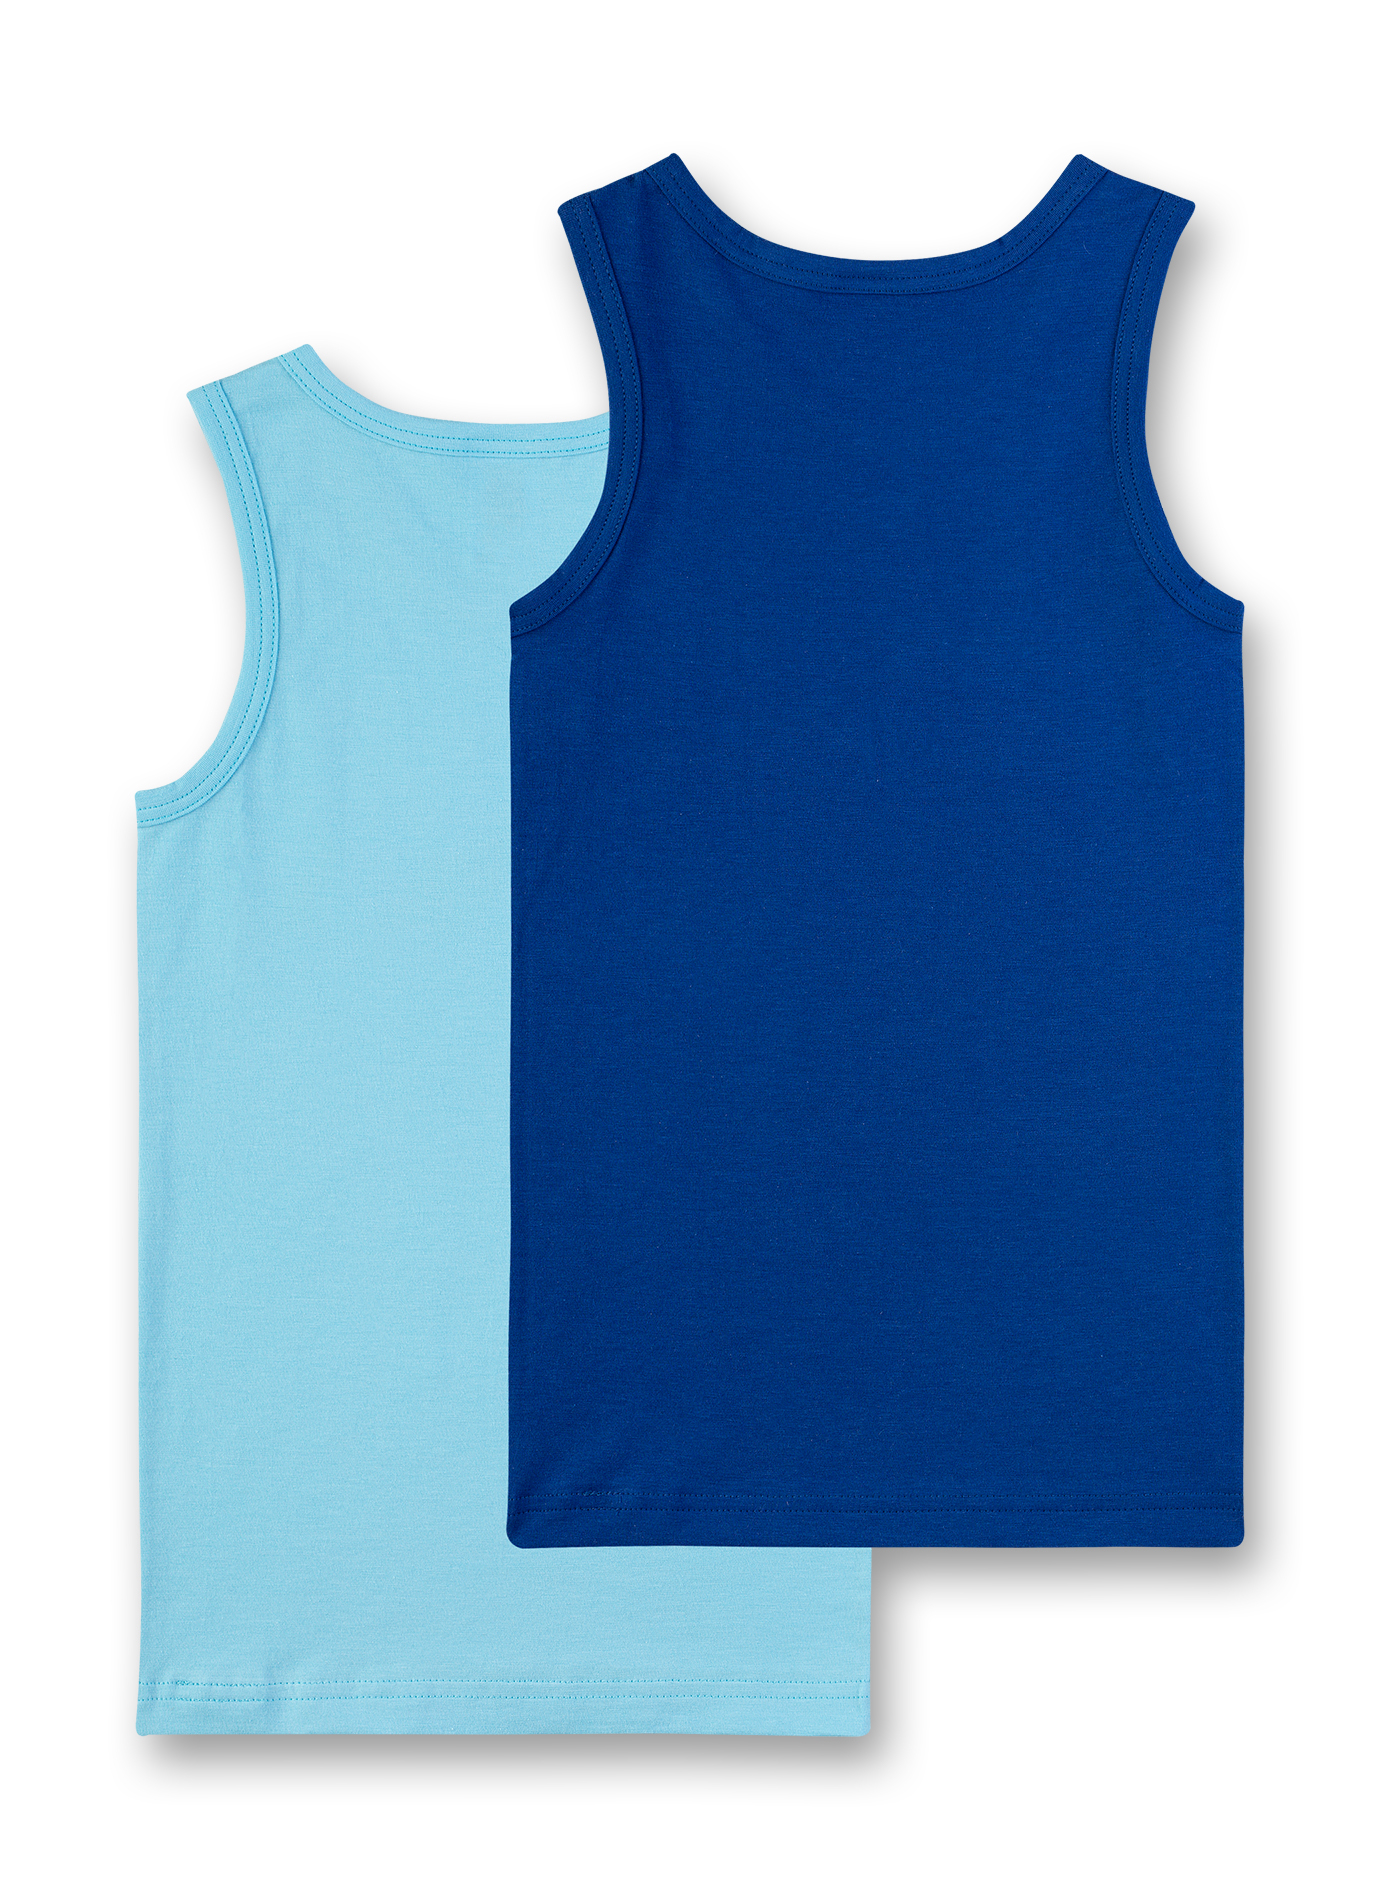 Jungen-Unterhemd (Doppelpack) Blau und Hellblau Crocodile Island